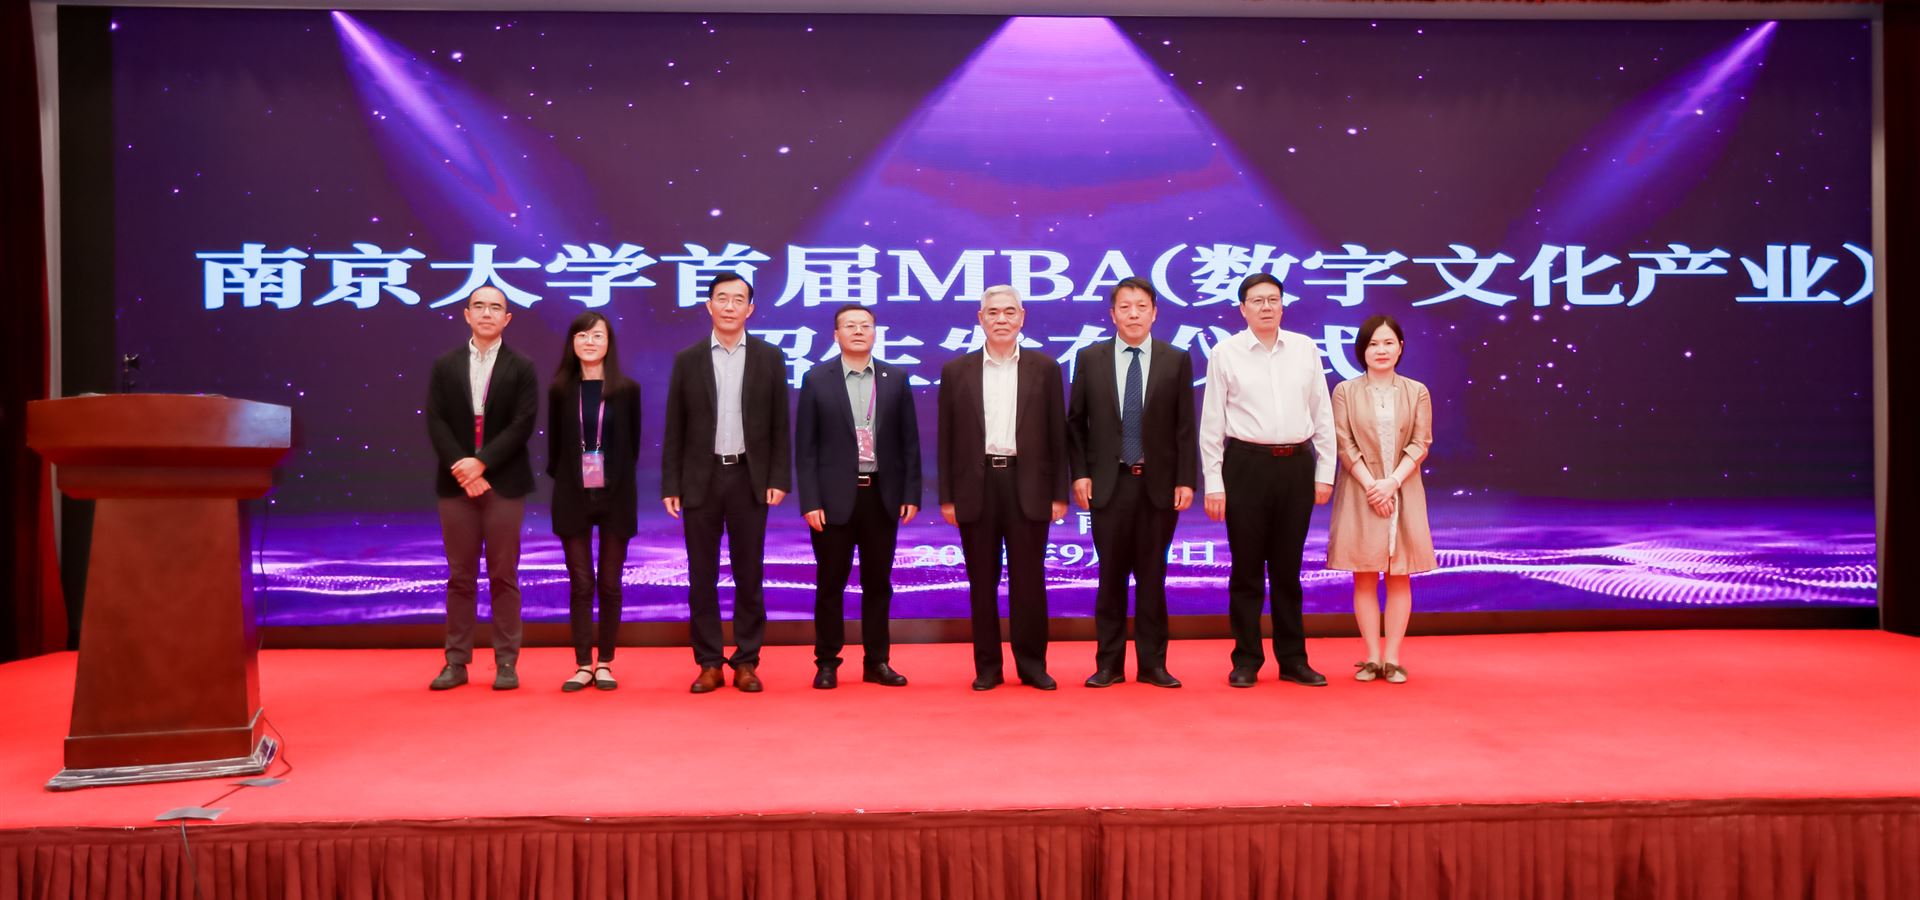 南京大学首届MBA(文化数字产业)招生发布仪式